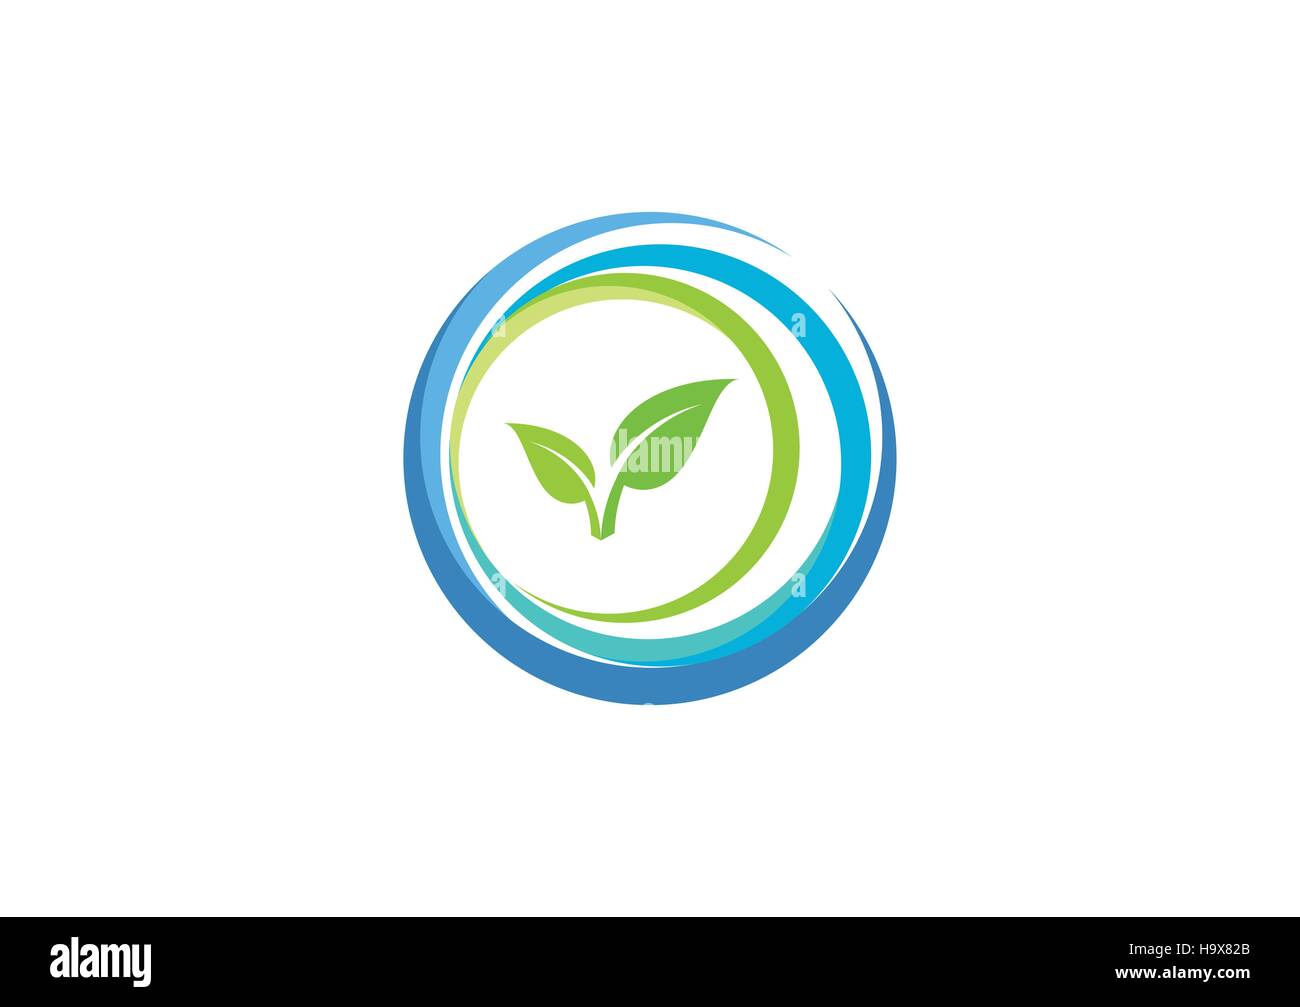 Kreis Element Wasser ökologie Natur Pflanze logo Icon, Wellness Gesundheit organische Symbol vektor design Stock Vektor